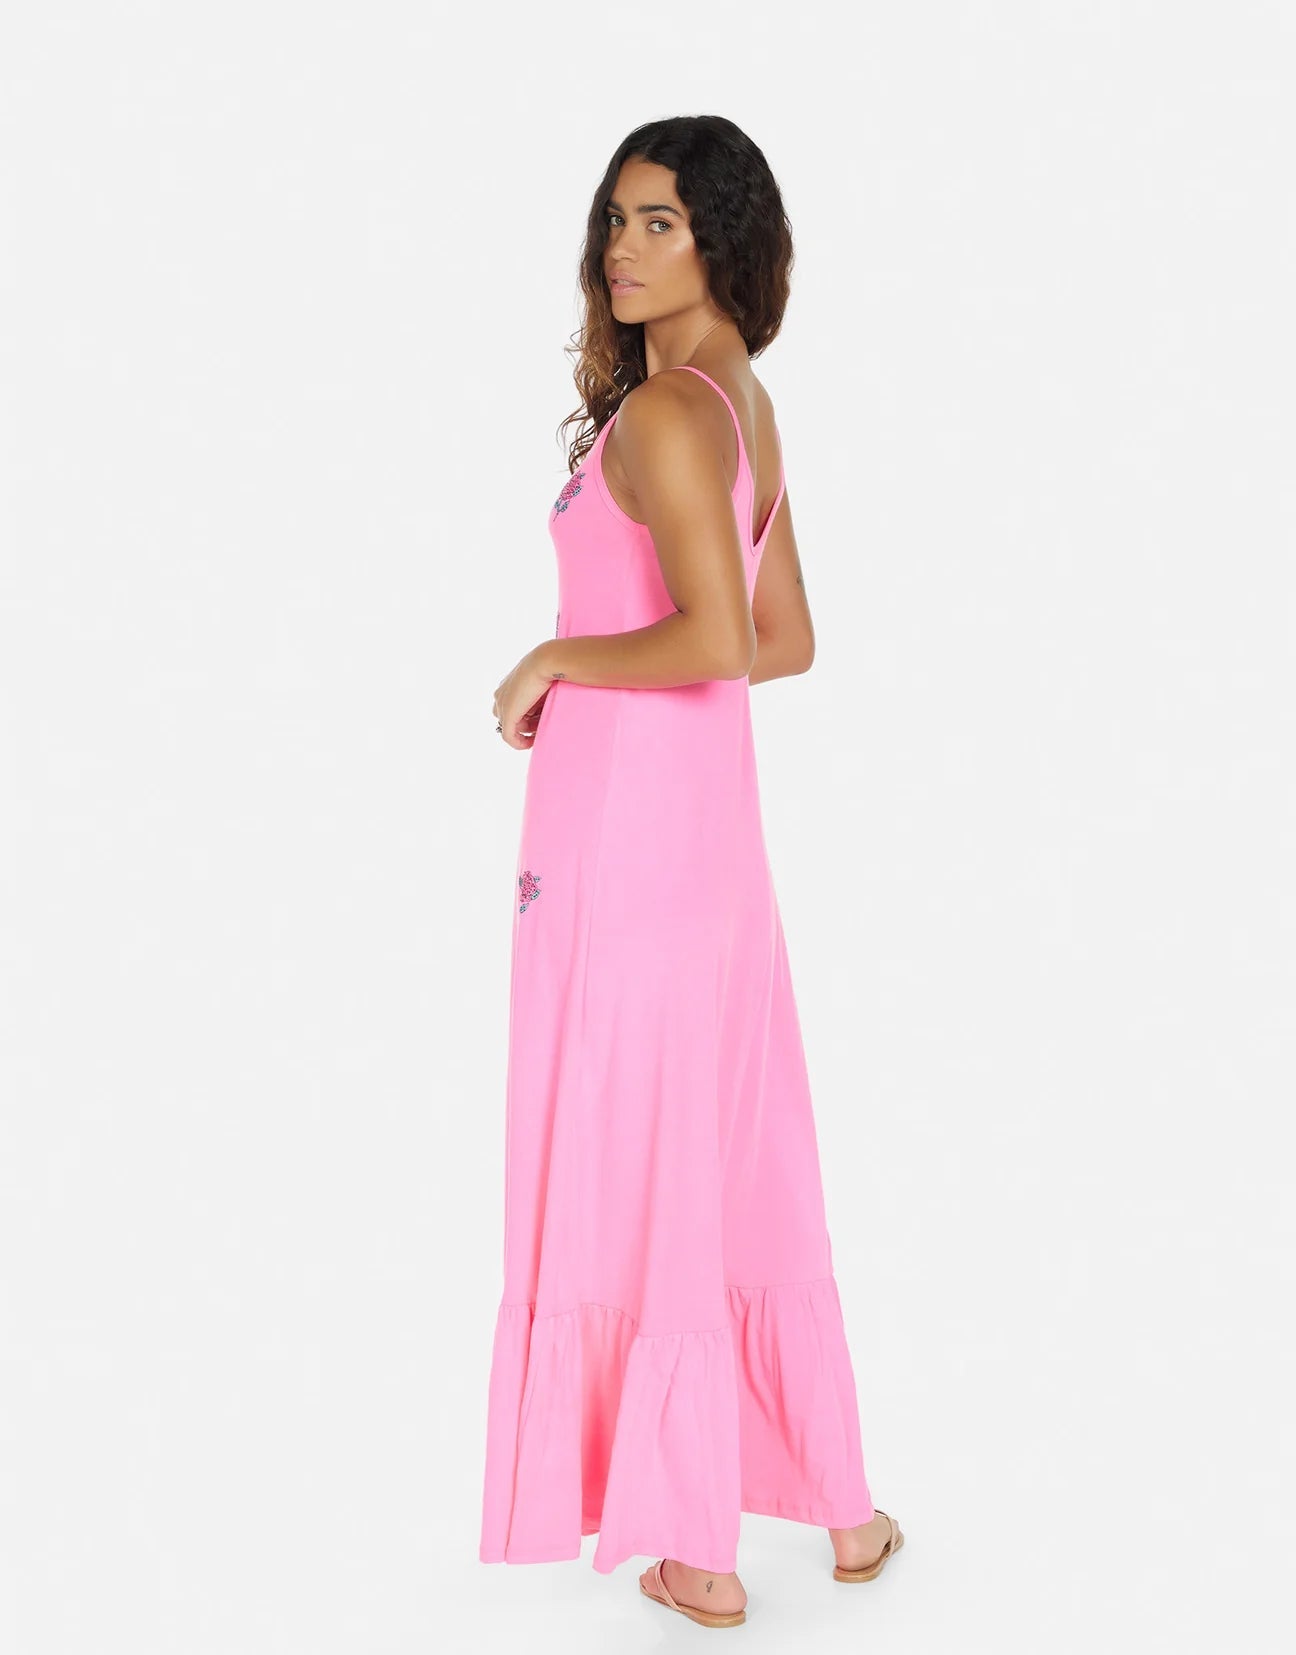 Shop Lauren Moshi Beatrix Crystal Roses Maxi Dress - Premium Maxi Dress from Lauren Moshi Online now at Spoiled Brat 